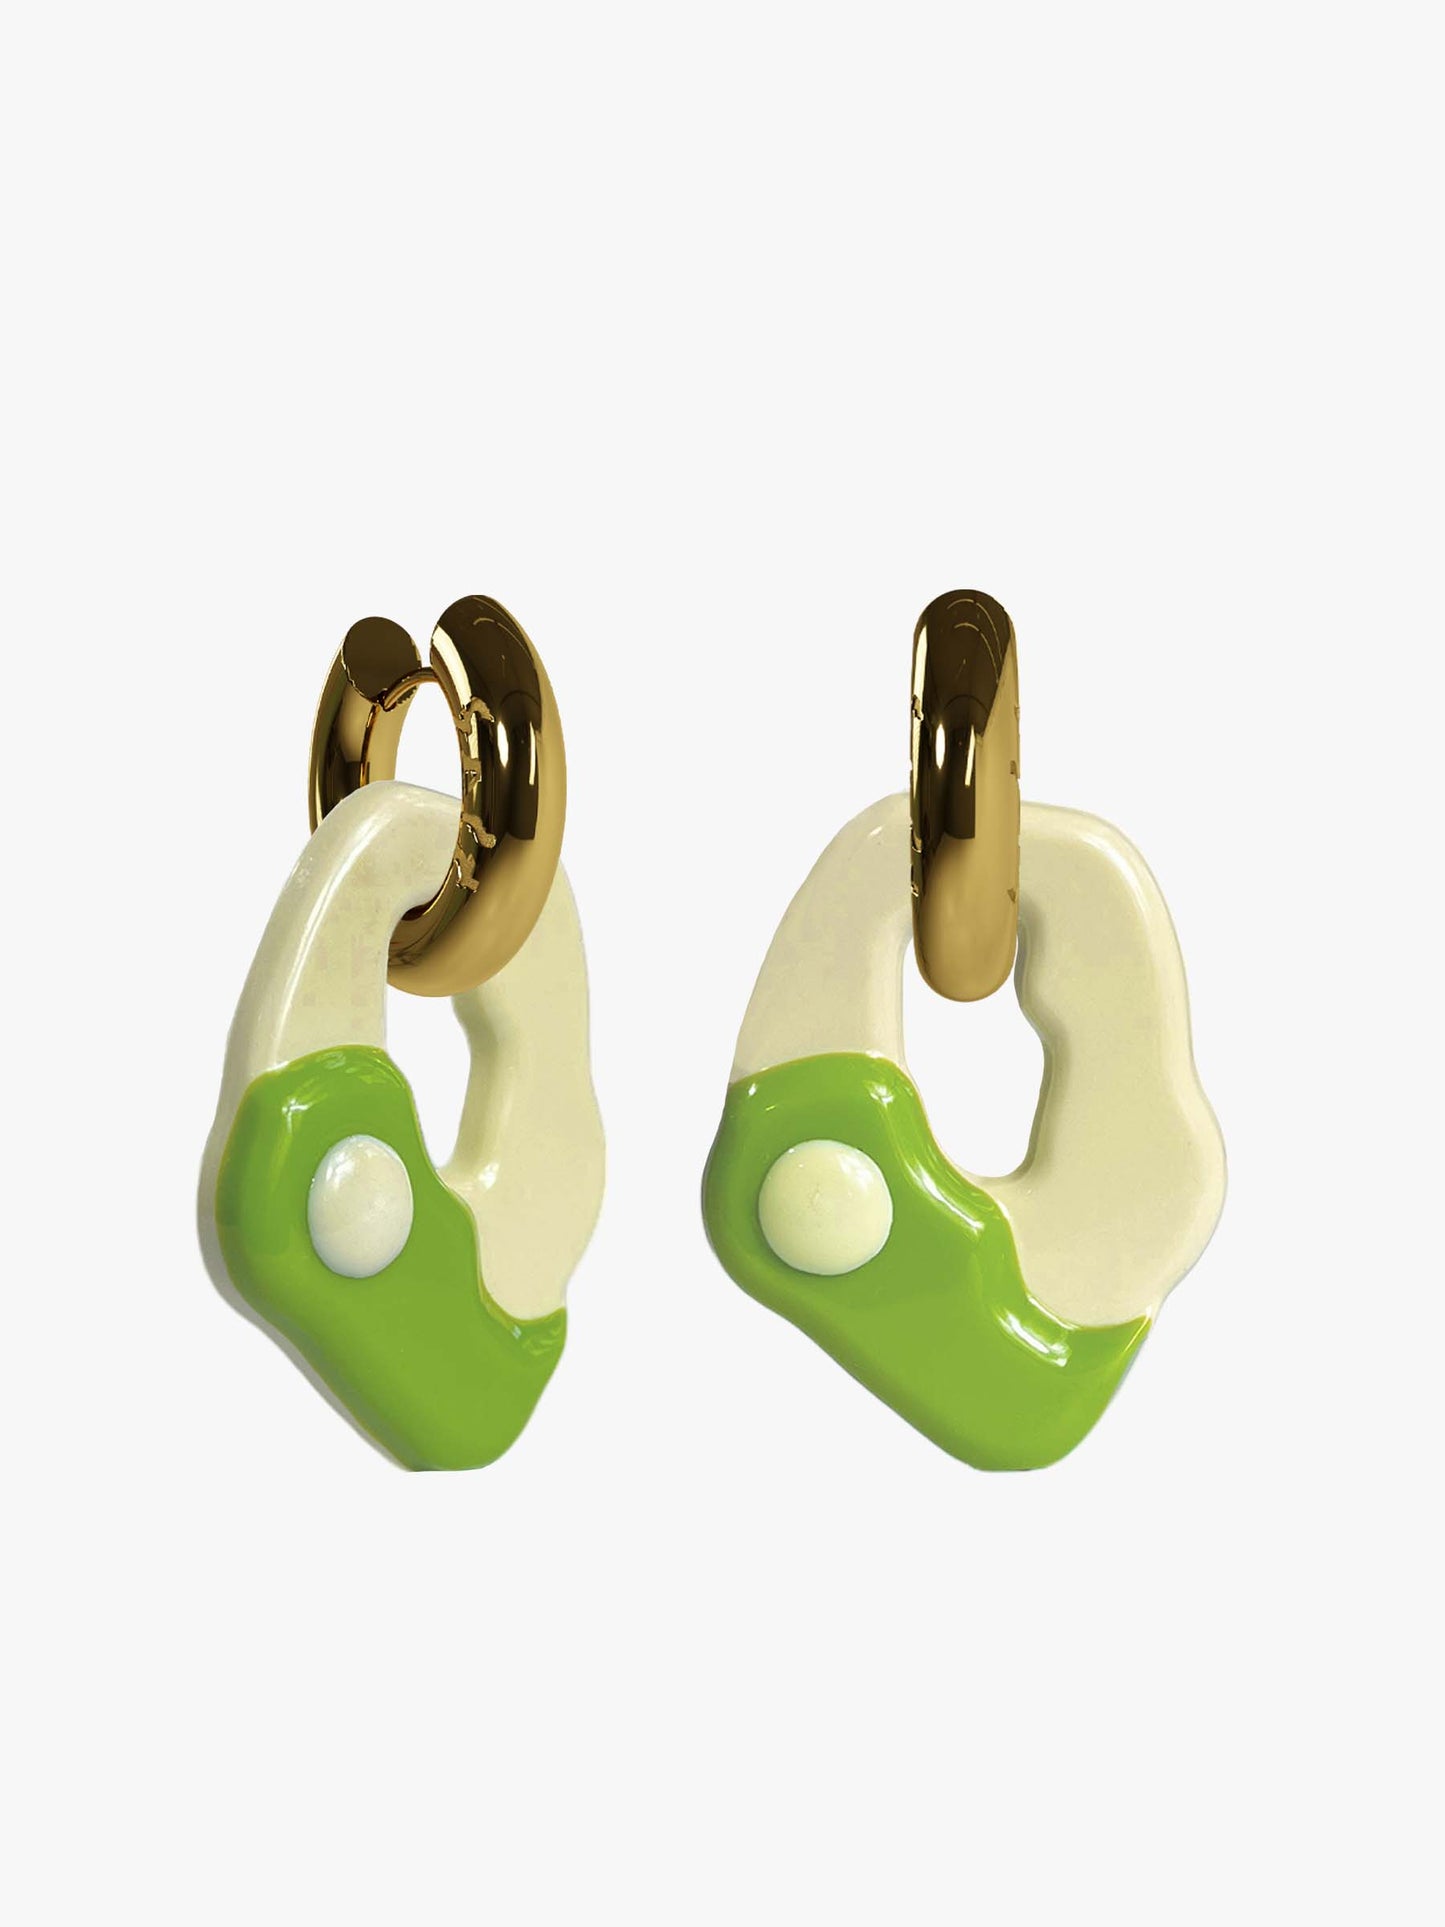 Yin Yang matcha gold earring (pair)